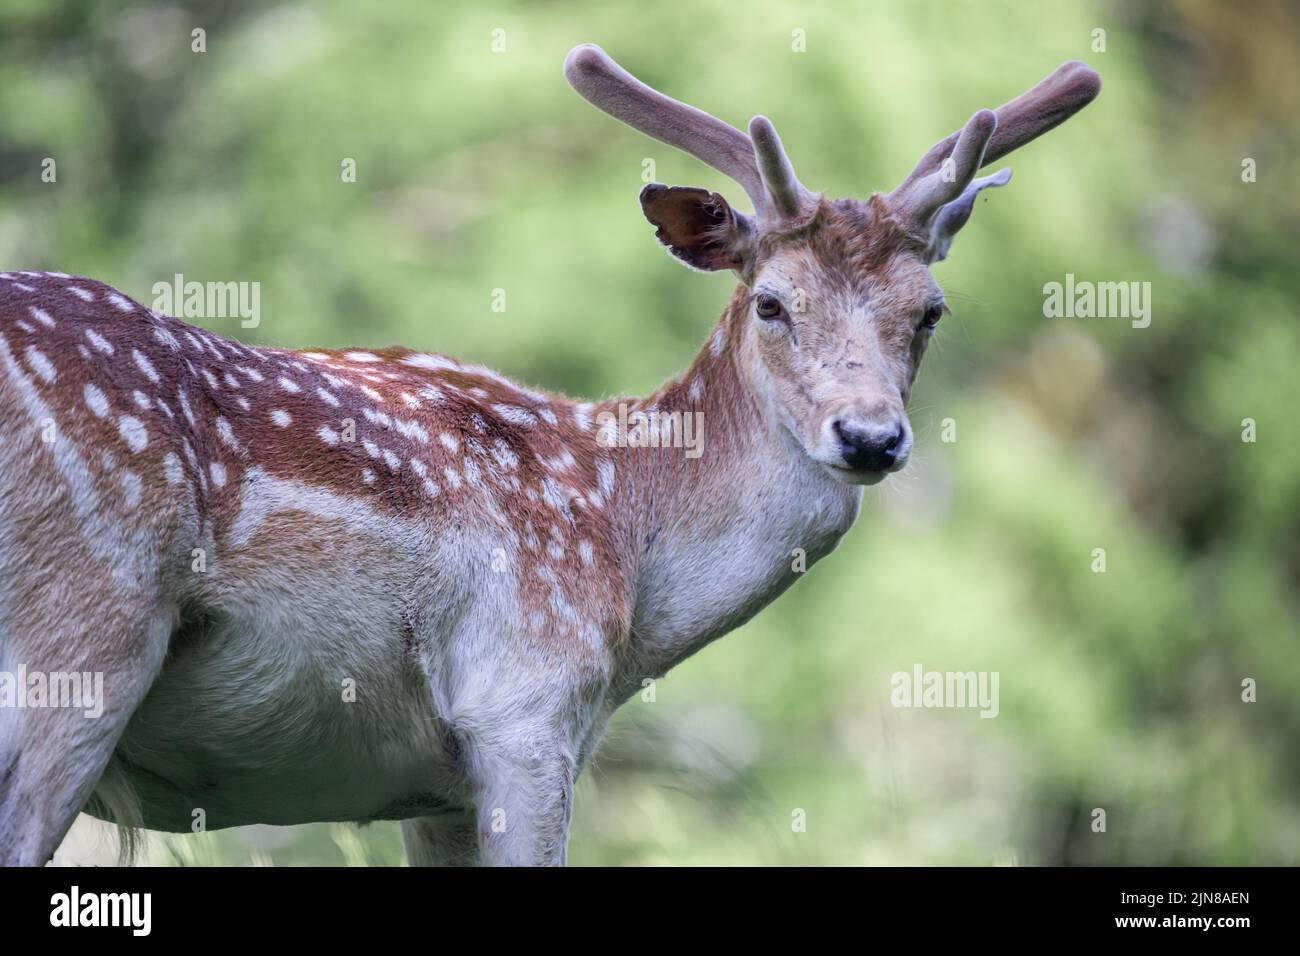 A male sika deer at Wildlife Park Gersfeld Biosphere Reserve Rhon in Germany Stock Photo